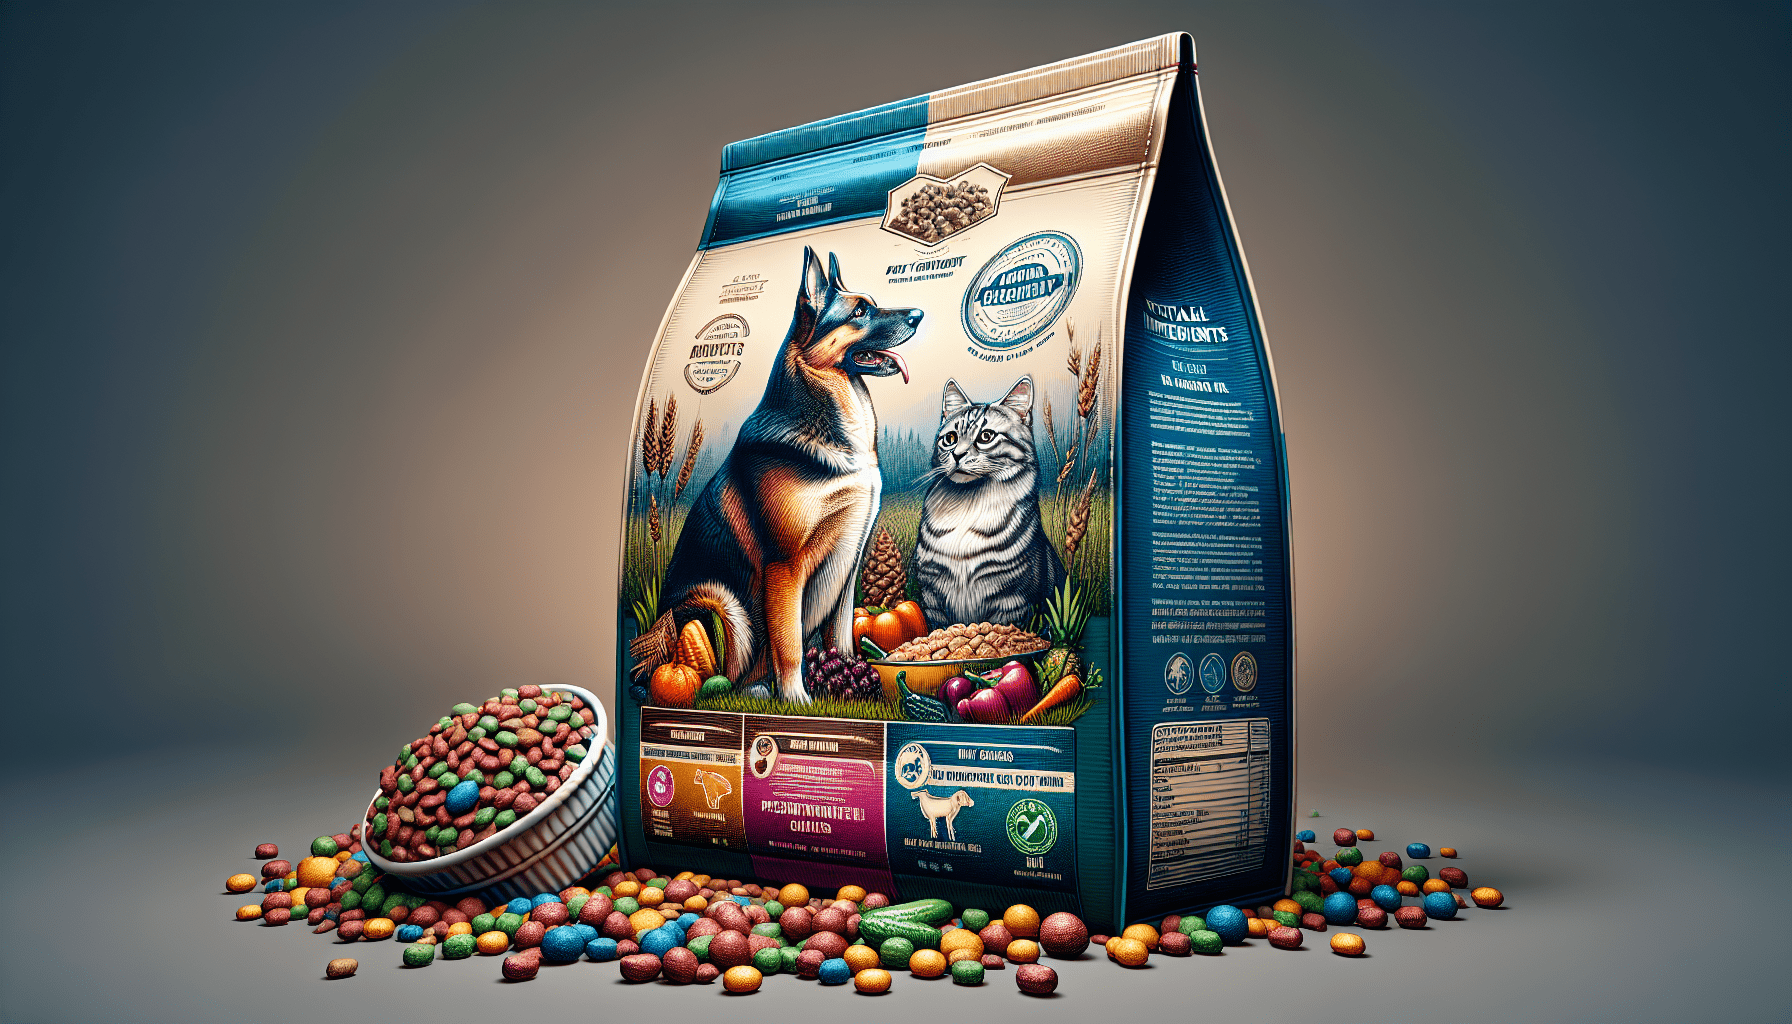 Wysong Fundamentals Canine/Feline Formula Dry Dog/Cat Food, Four, 5 lb. bags